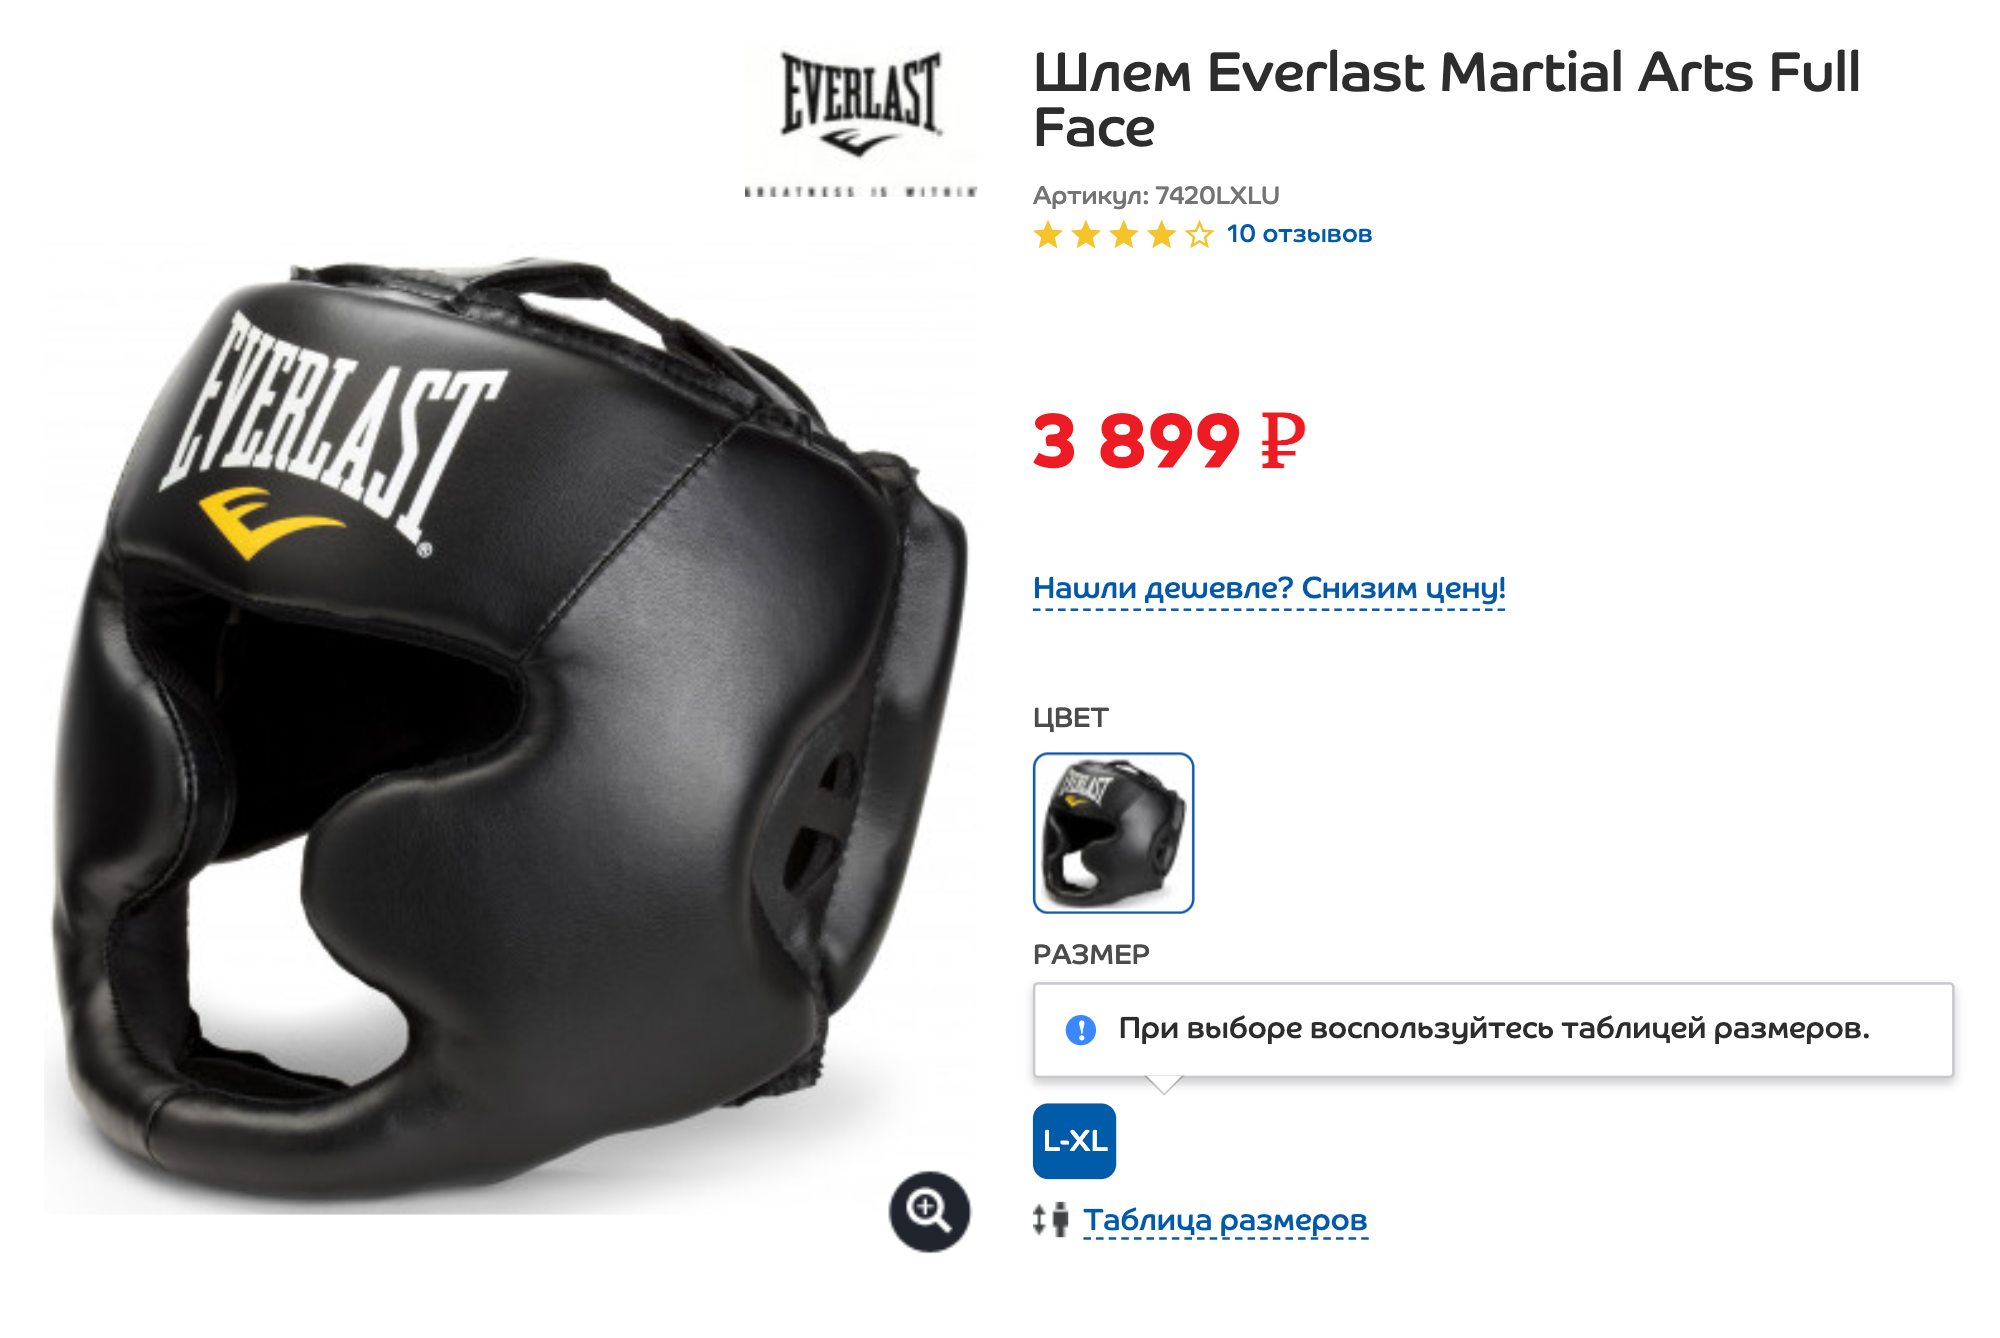 По моему мнению, идеальный шлем по соотношению между ценой и качеством, 3899 ₽